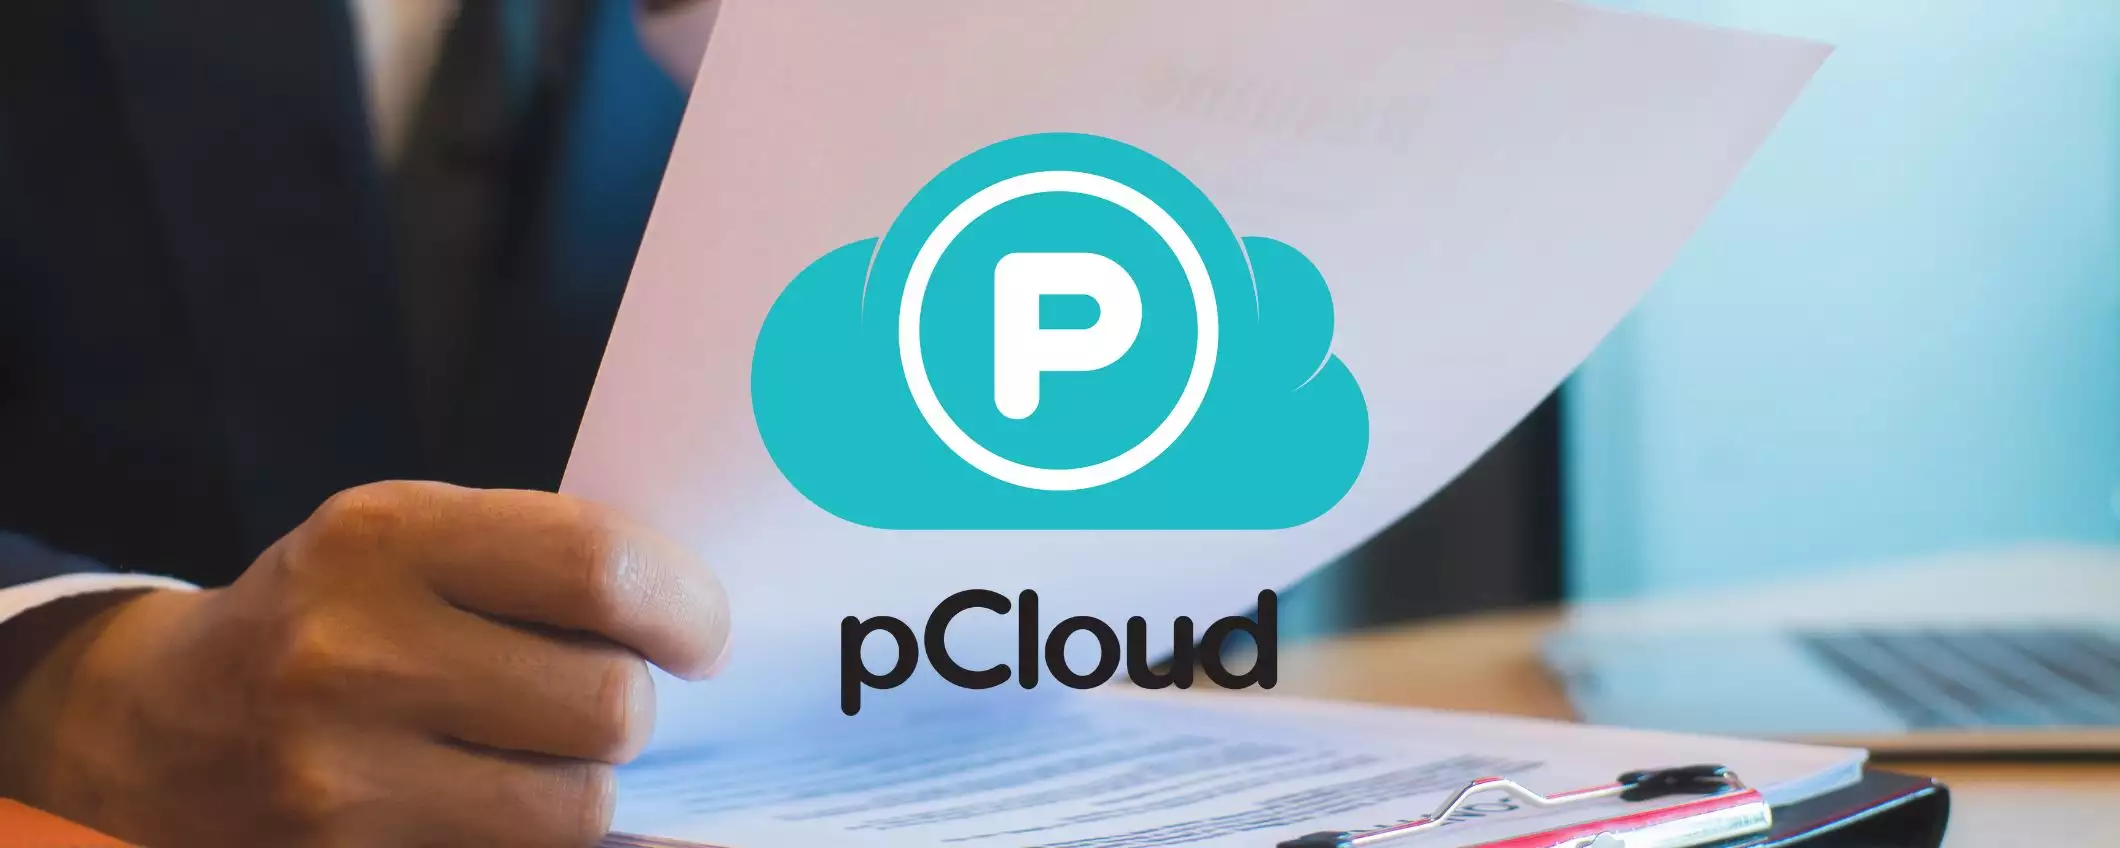 pCloud: l'opzione economica per il tuo cloud storage senza abbonamento